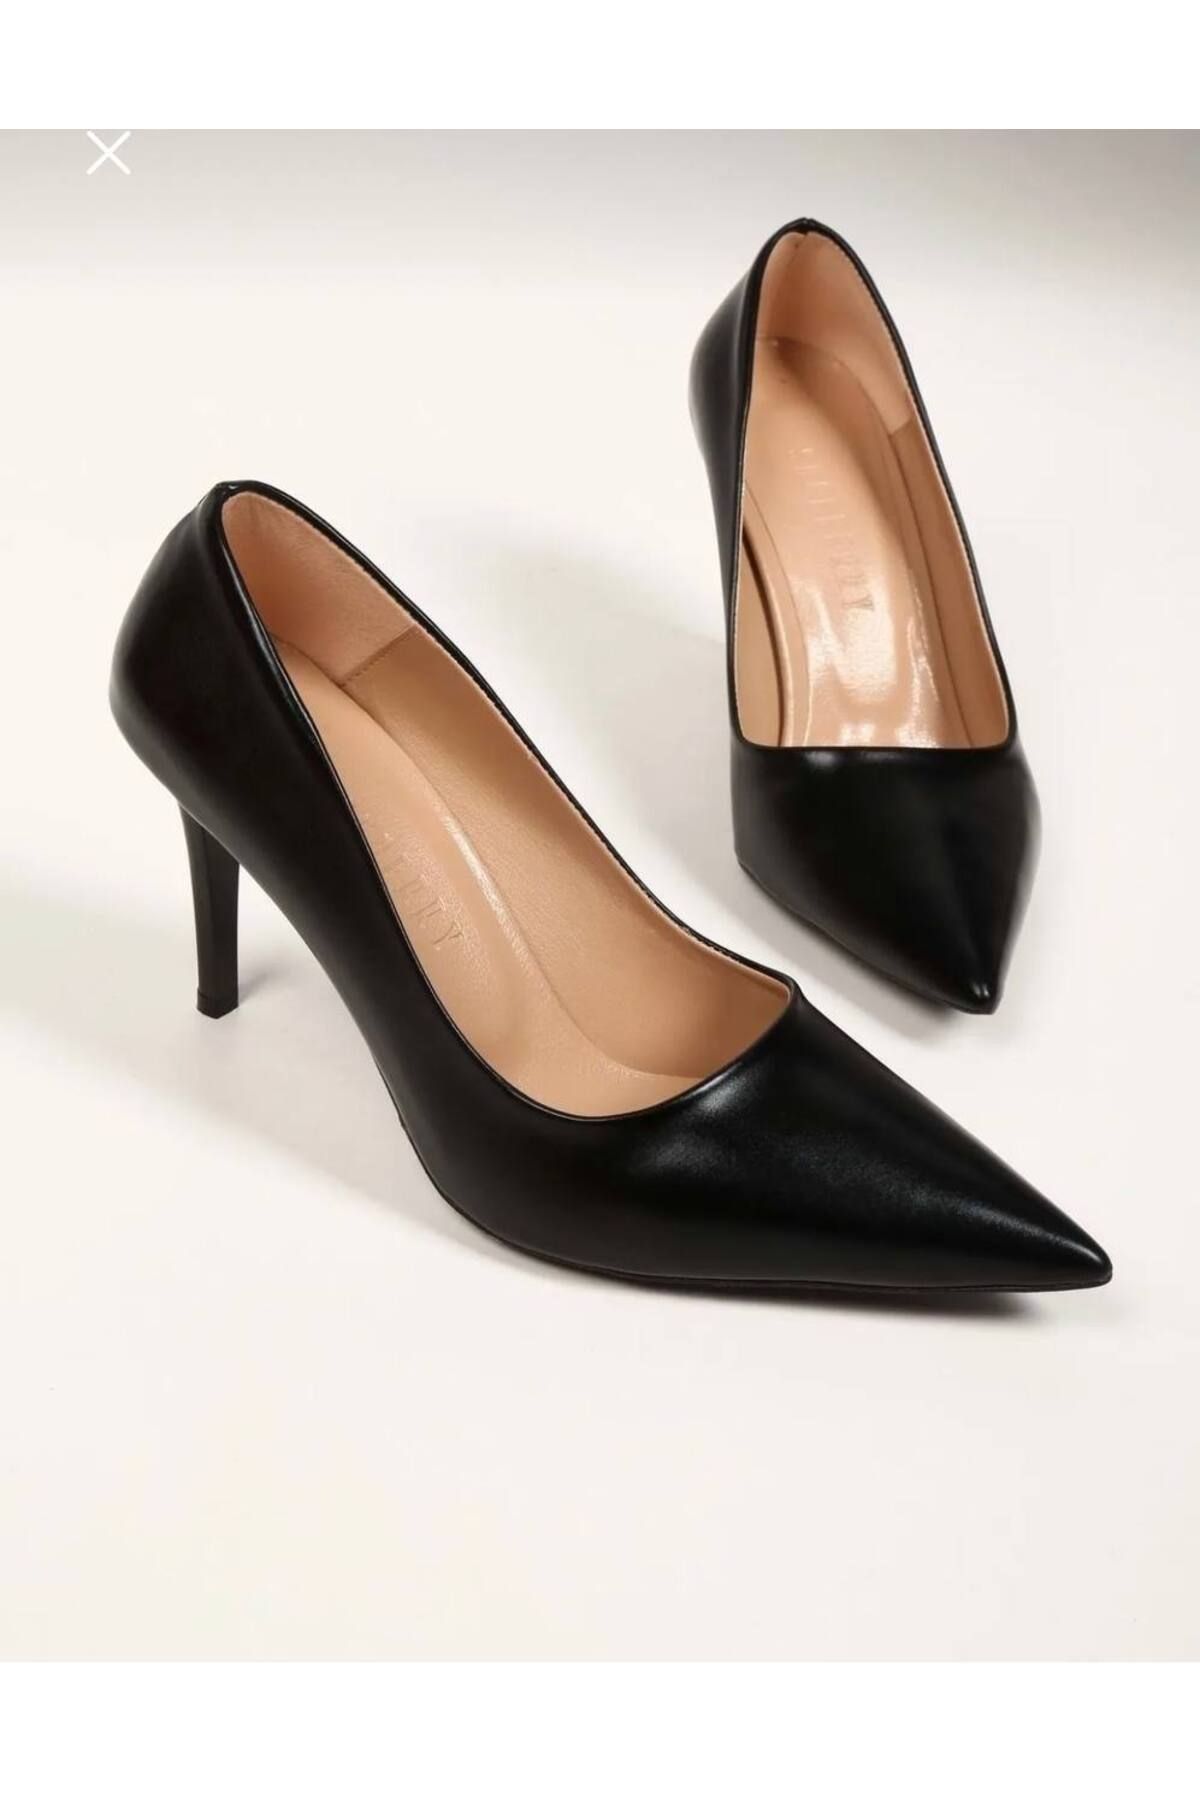 Leyna Kadın Siyah Stiletto Klasik Topuklu Ayakkabı